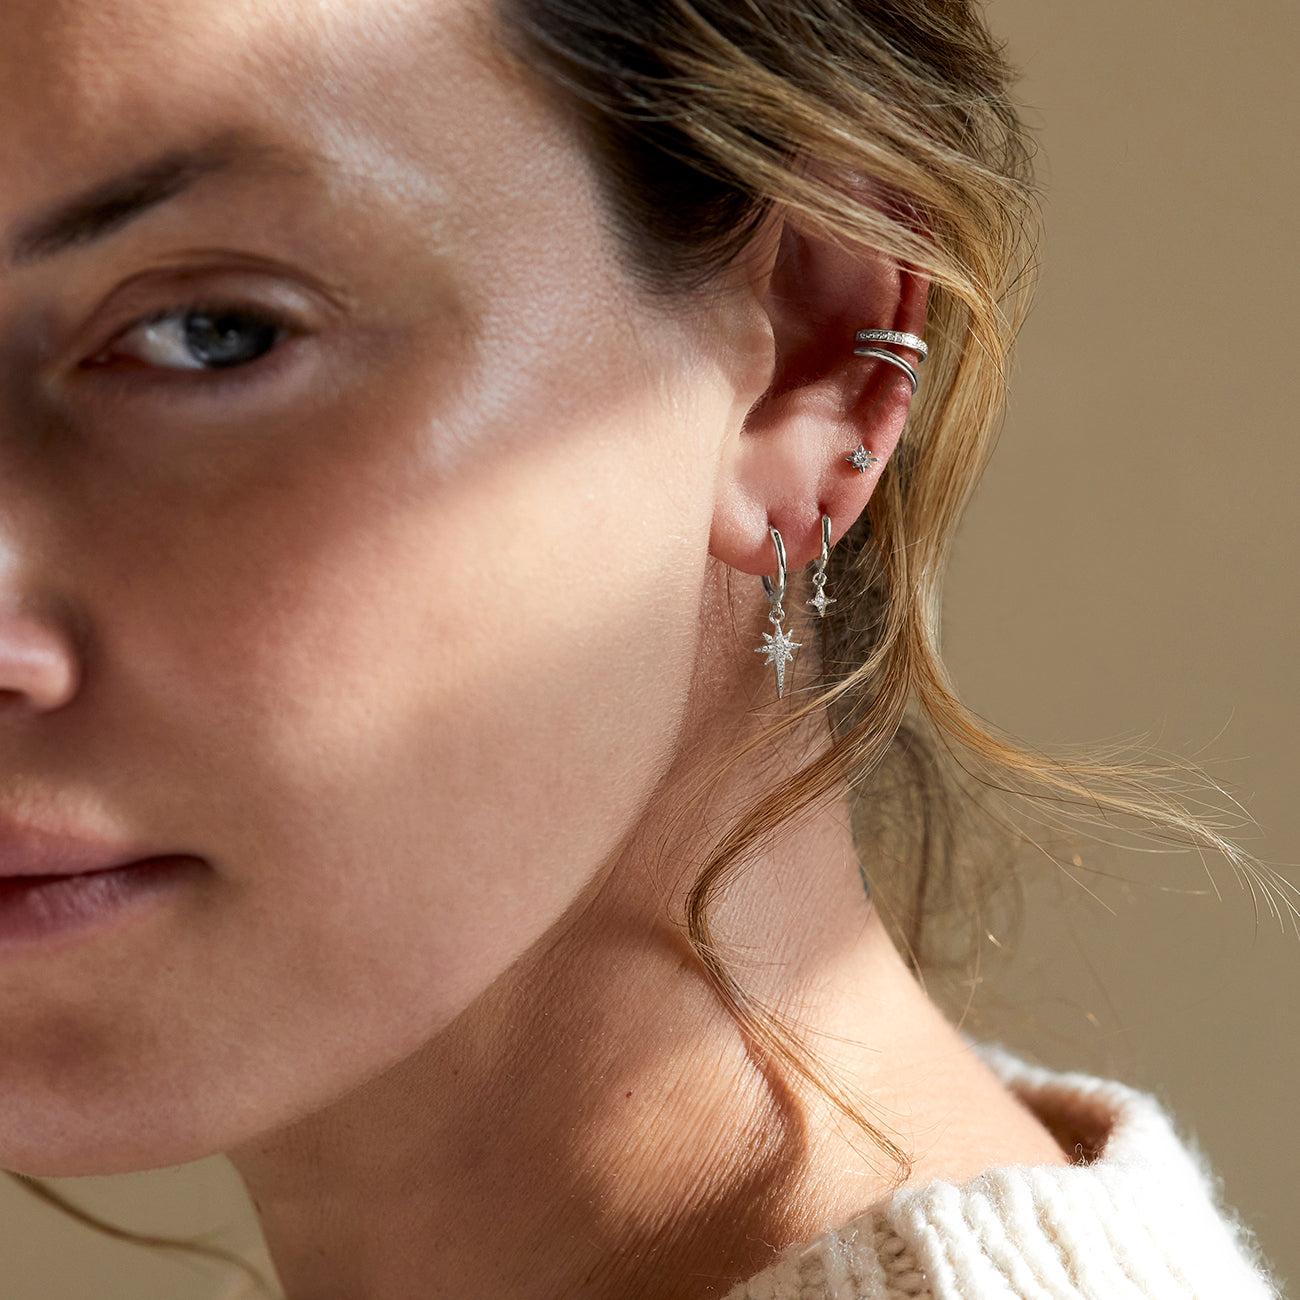 Gold Huggie Earrings, Hoop Earrings, Small Hoop Earrings – AMYO Jewelry